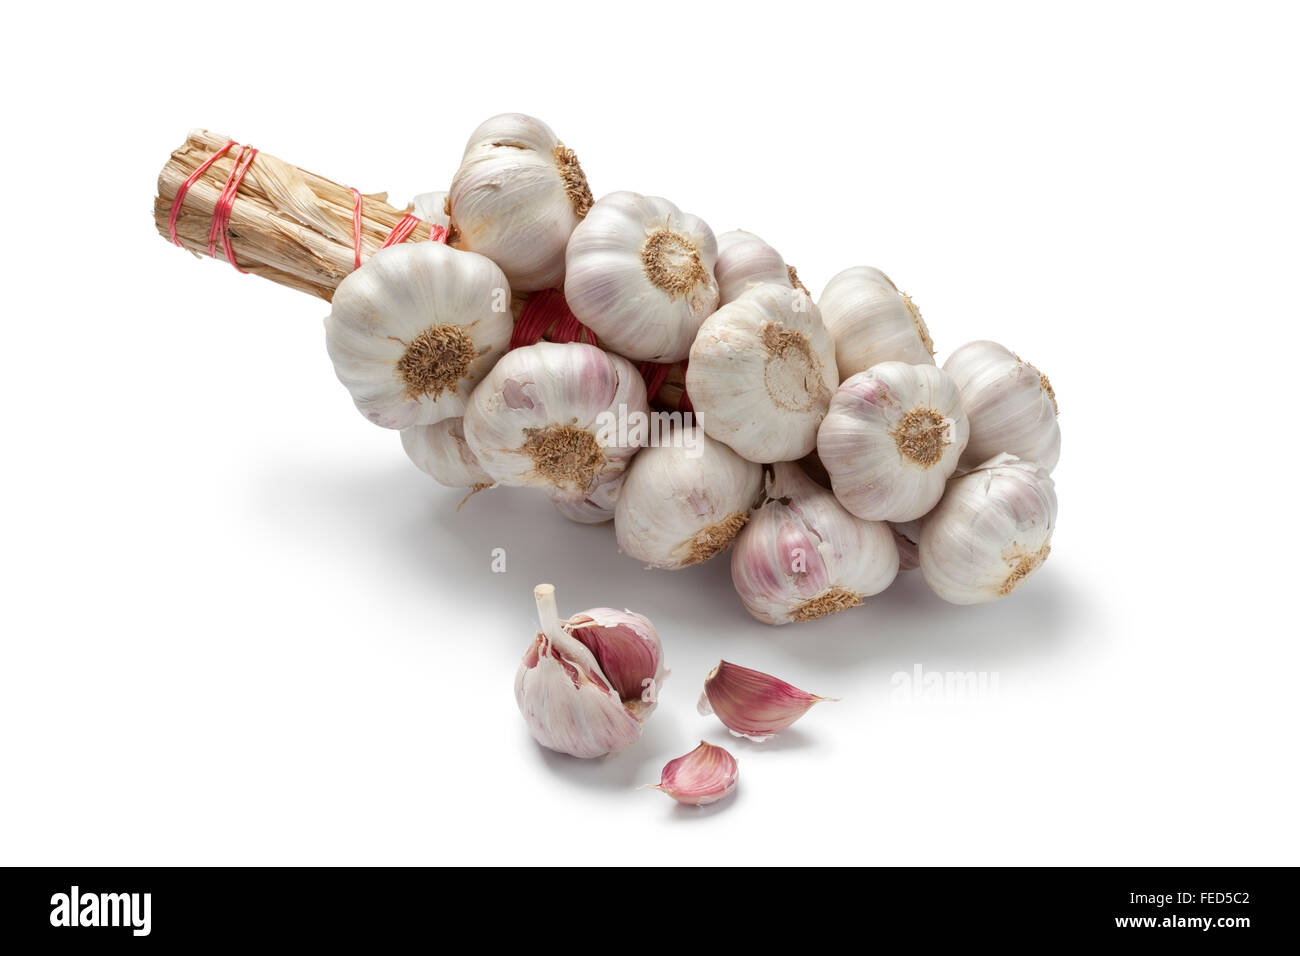 Reihe von Knoblauch Zwiebeln auf weißem Hintergrund Stockfoto